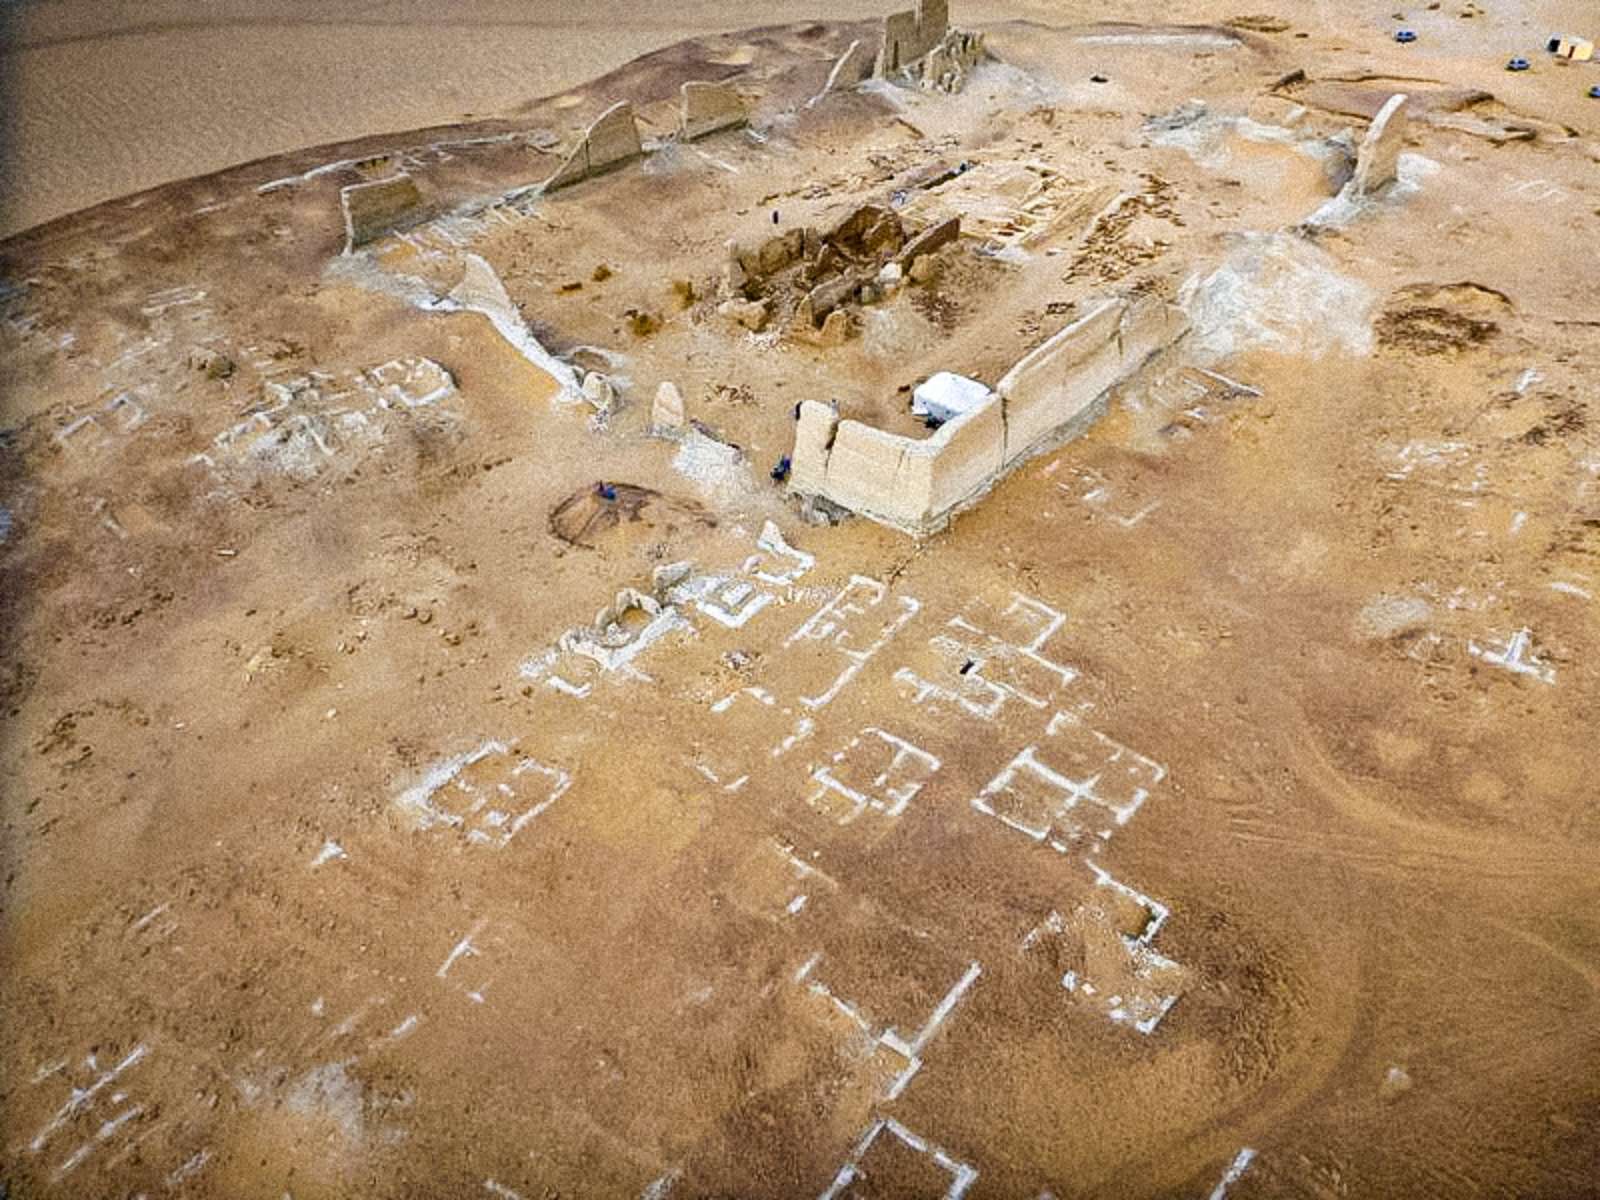 Soknopaiou Nesos : Une mystérieuse cité antique dans le désert du Fayoum 1